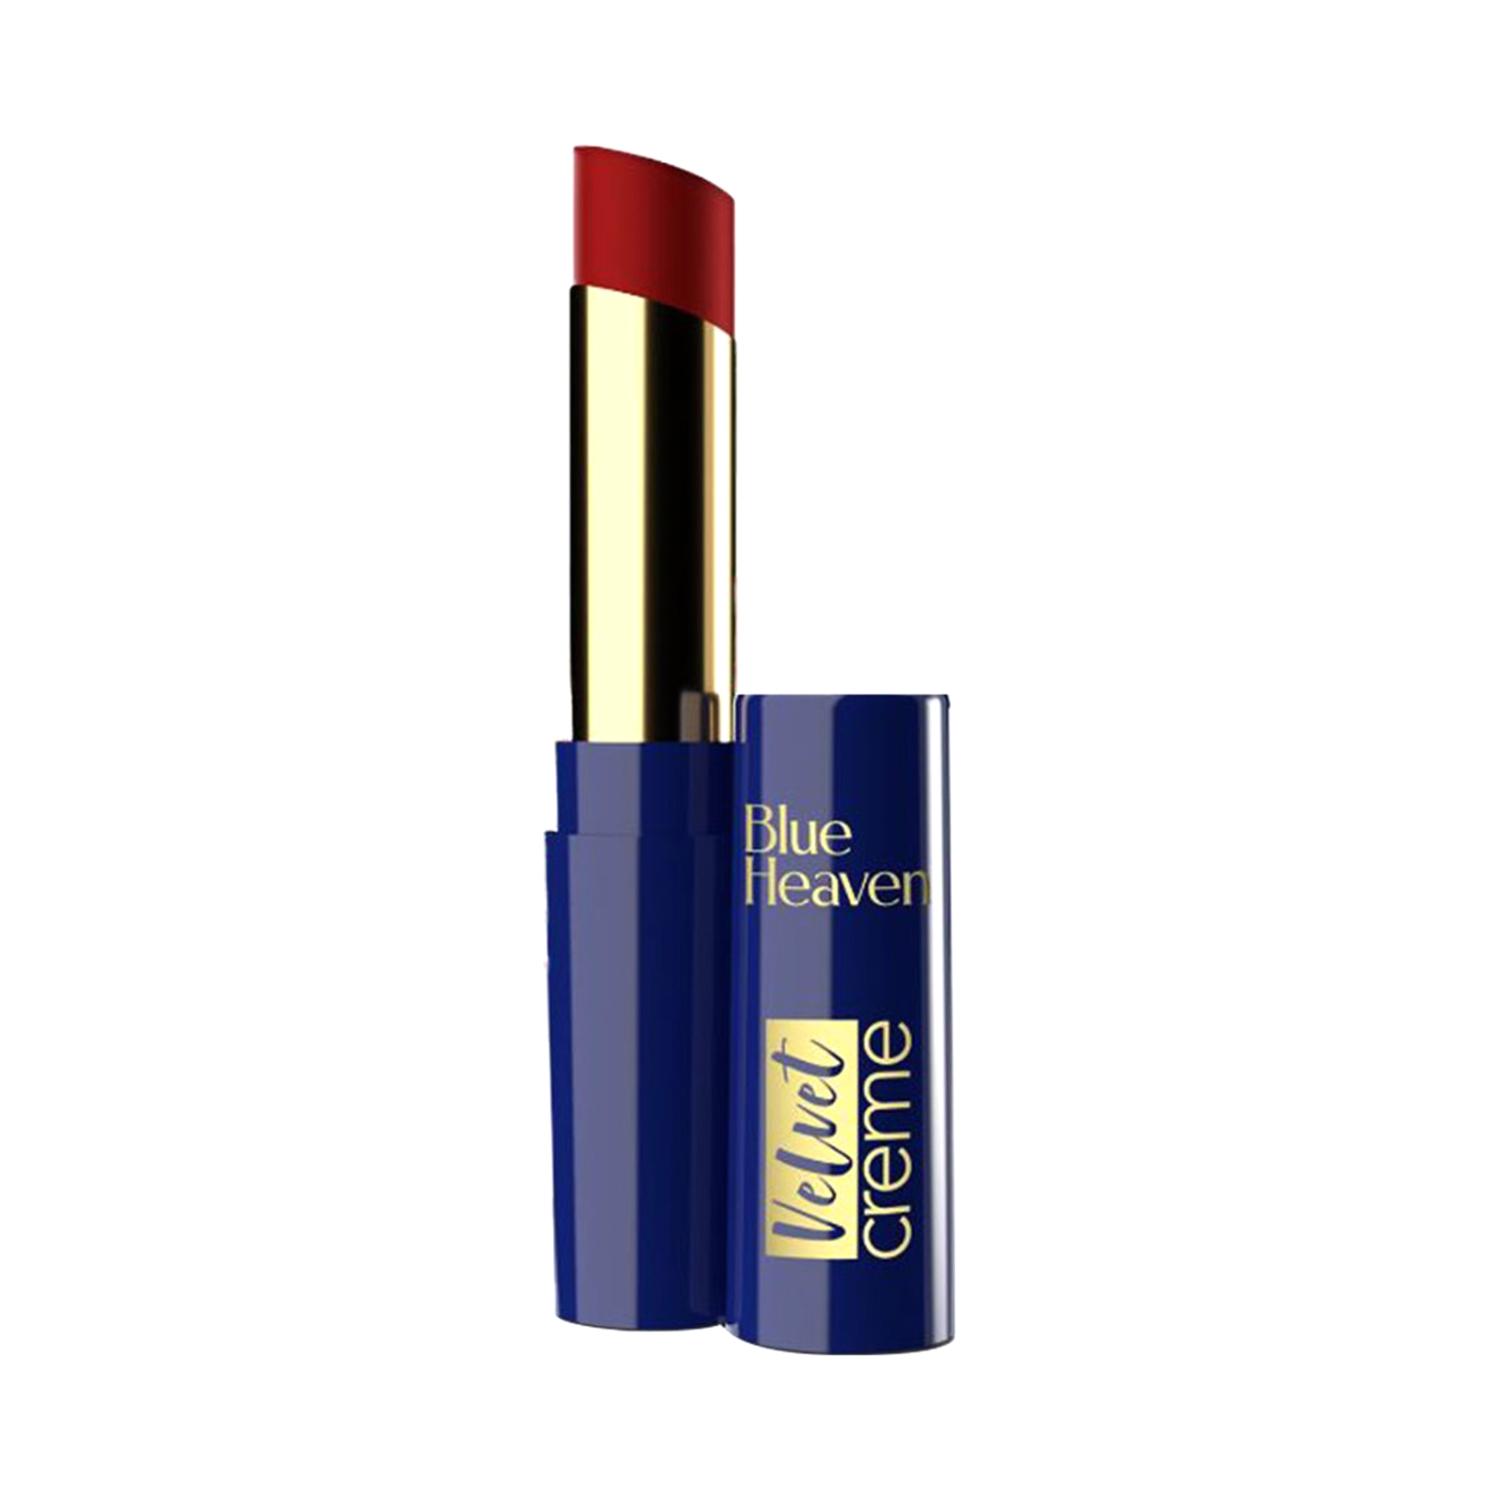 blue heaven velvet creme lipstick - siren red (3.5g)